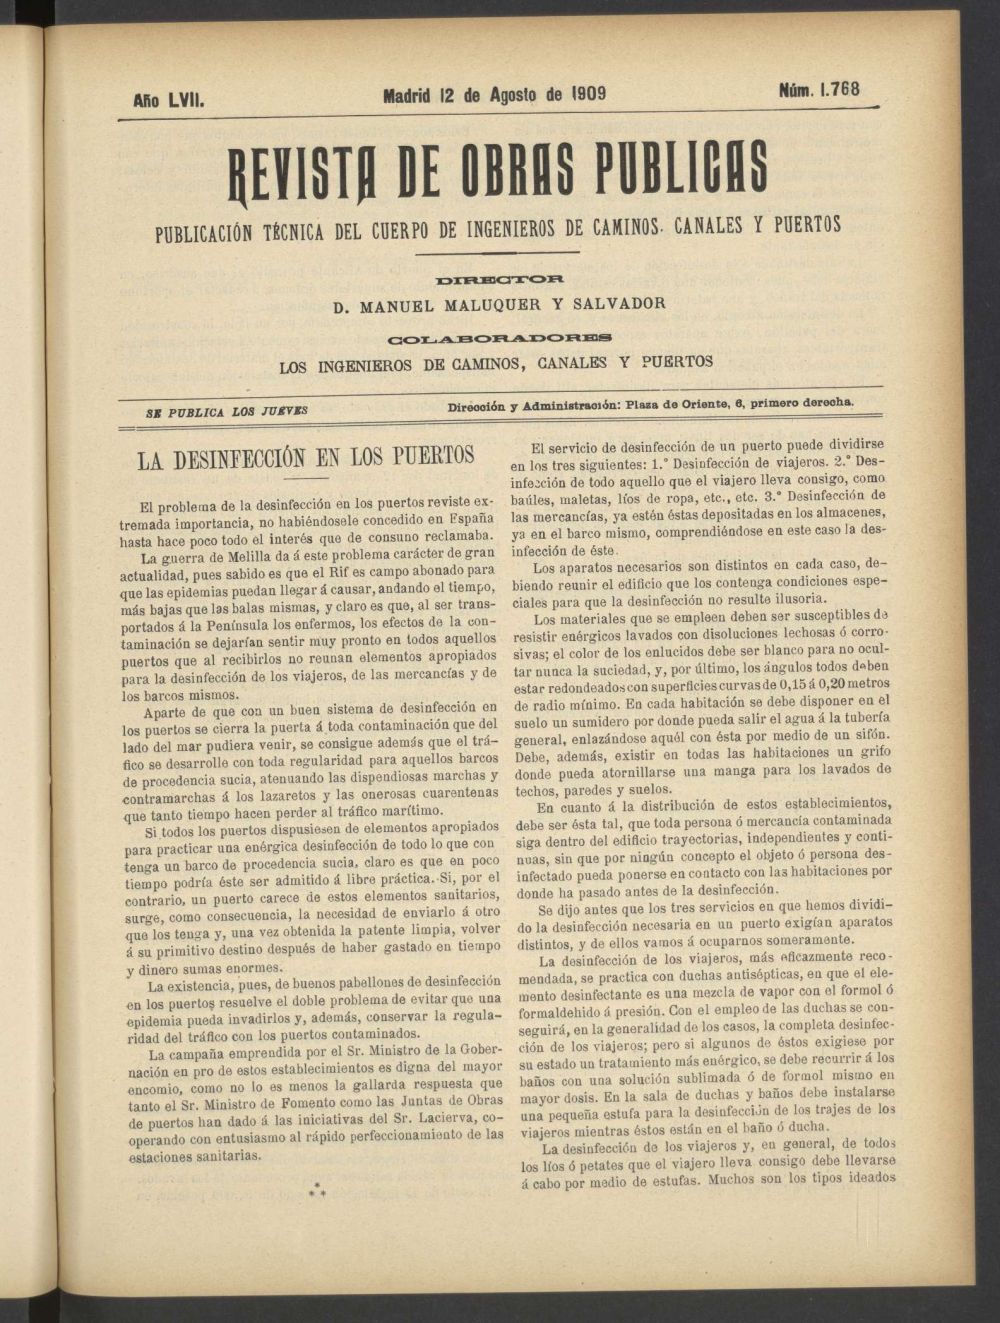 Revista de obras pblicas del 12 de agosto de 1909